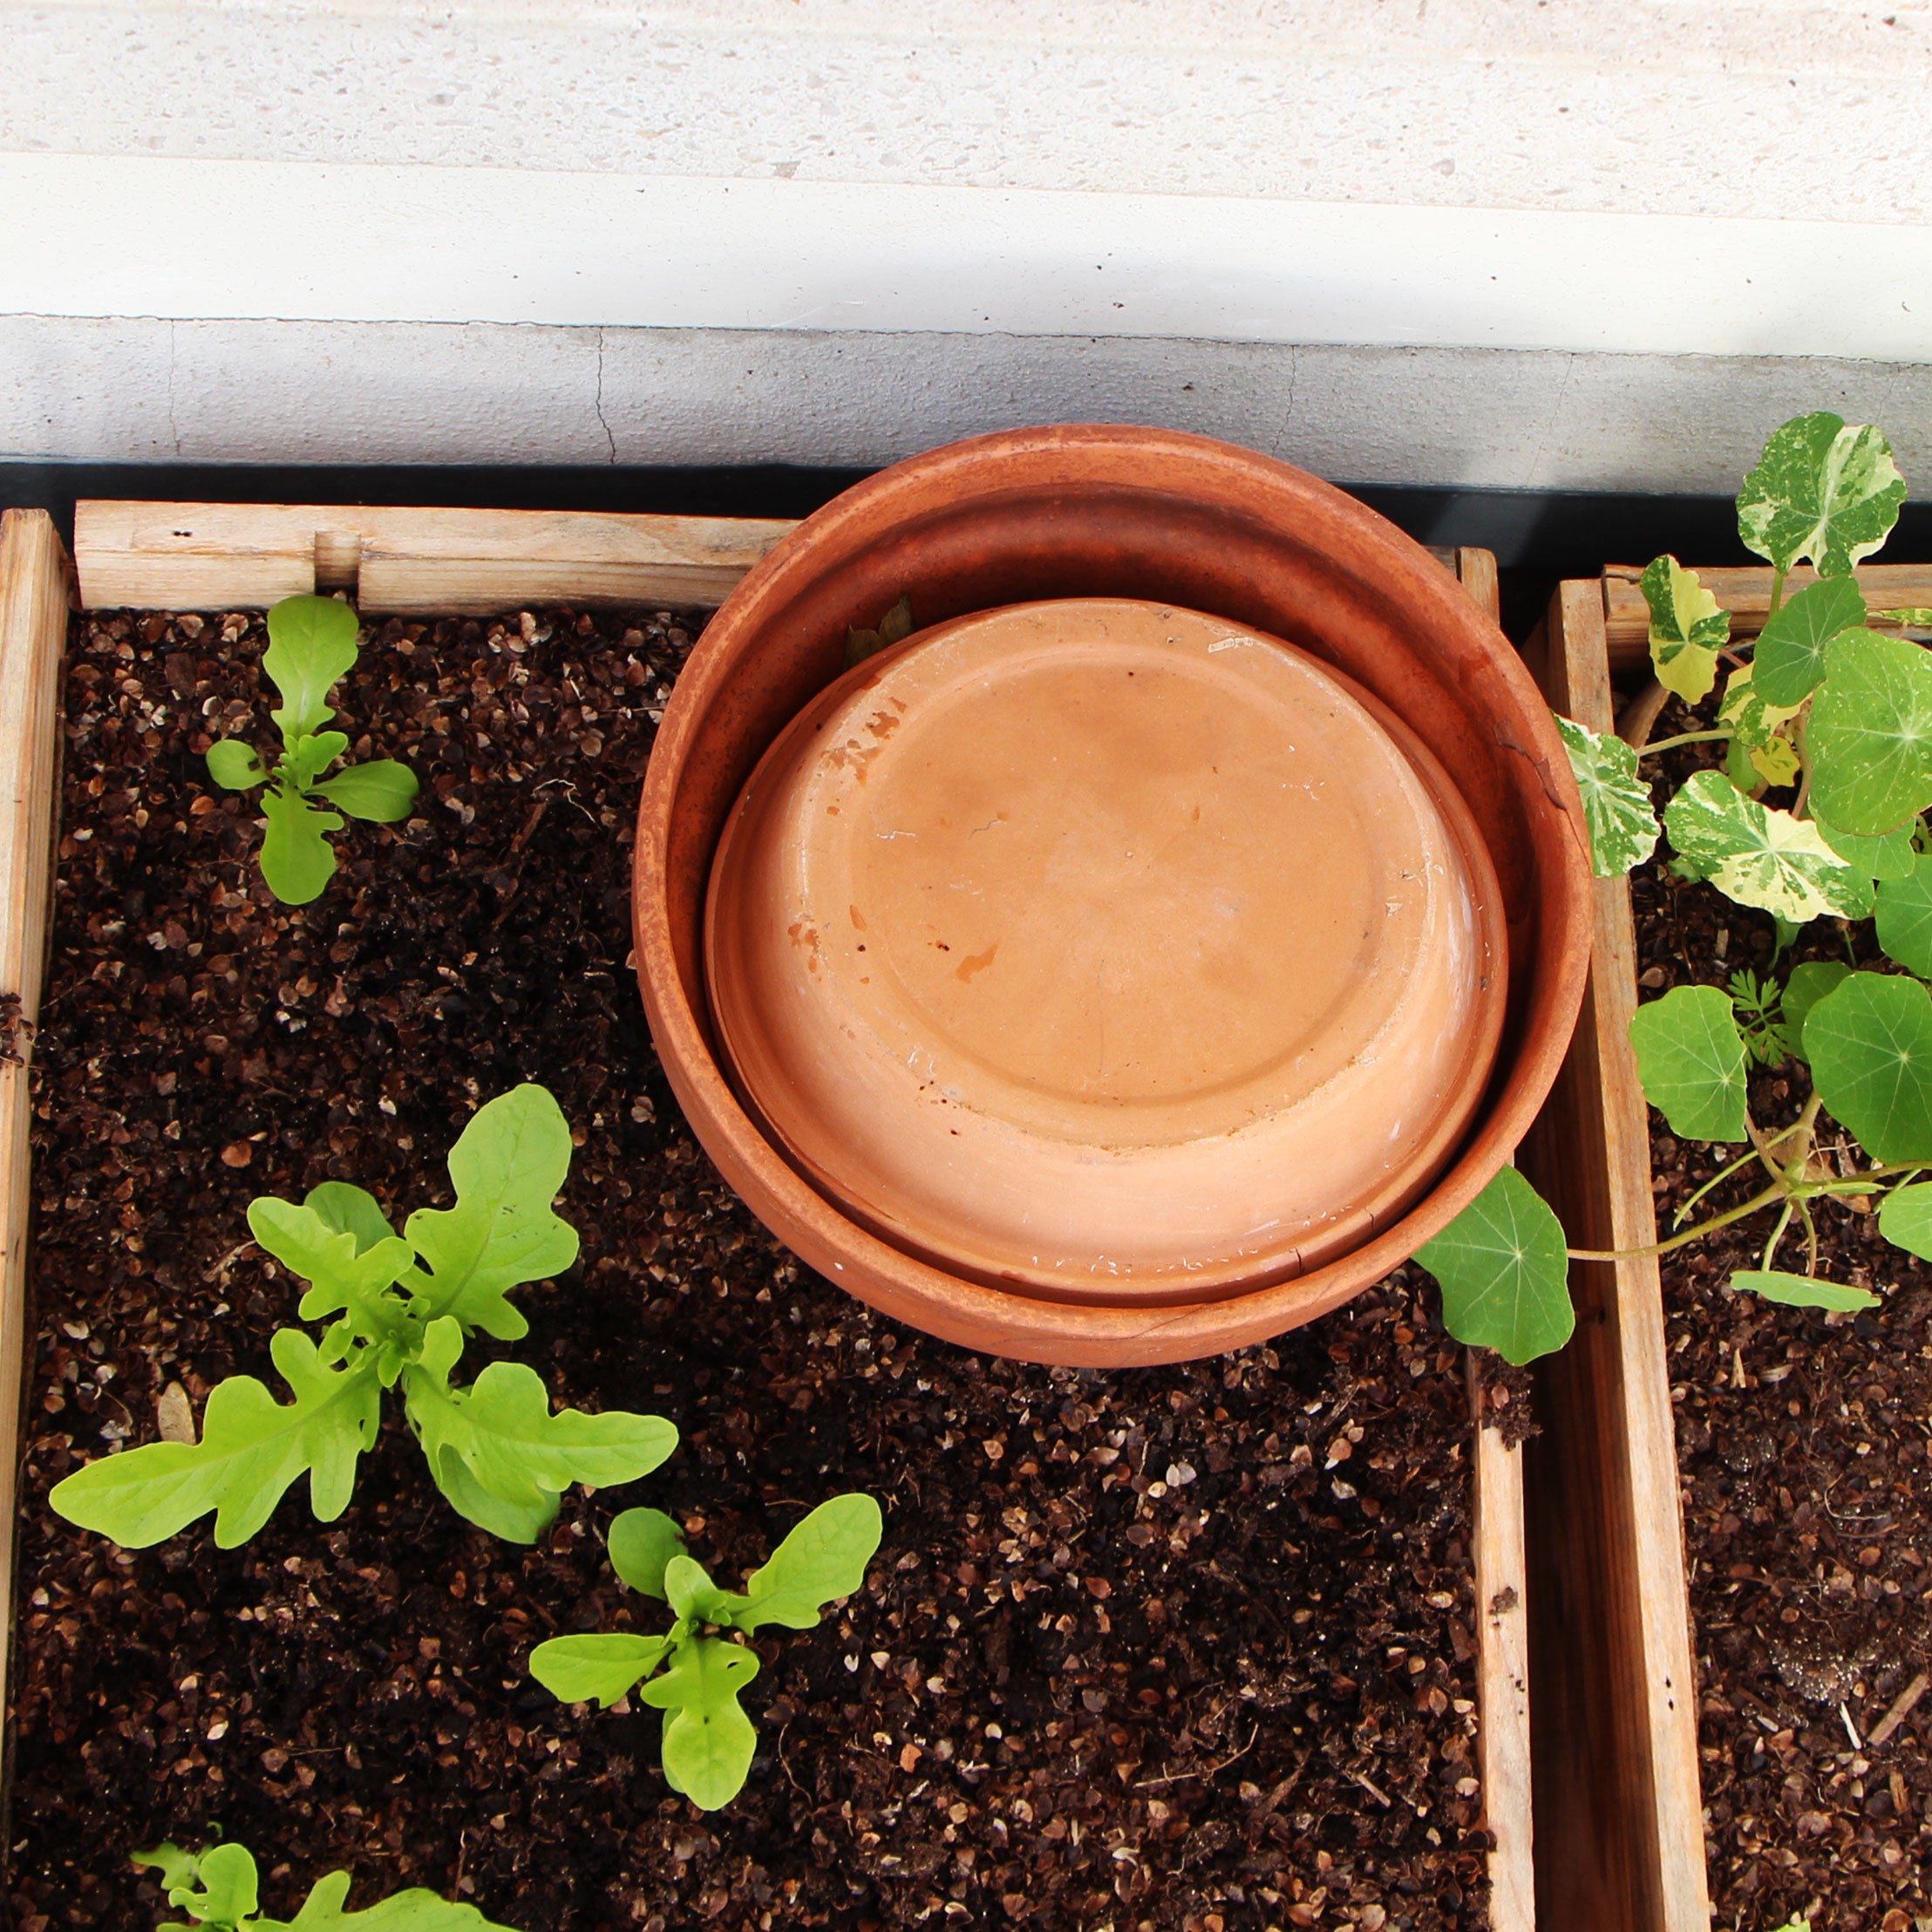 Comment bien intégrer un bac à compost dans son jardin ? - My